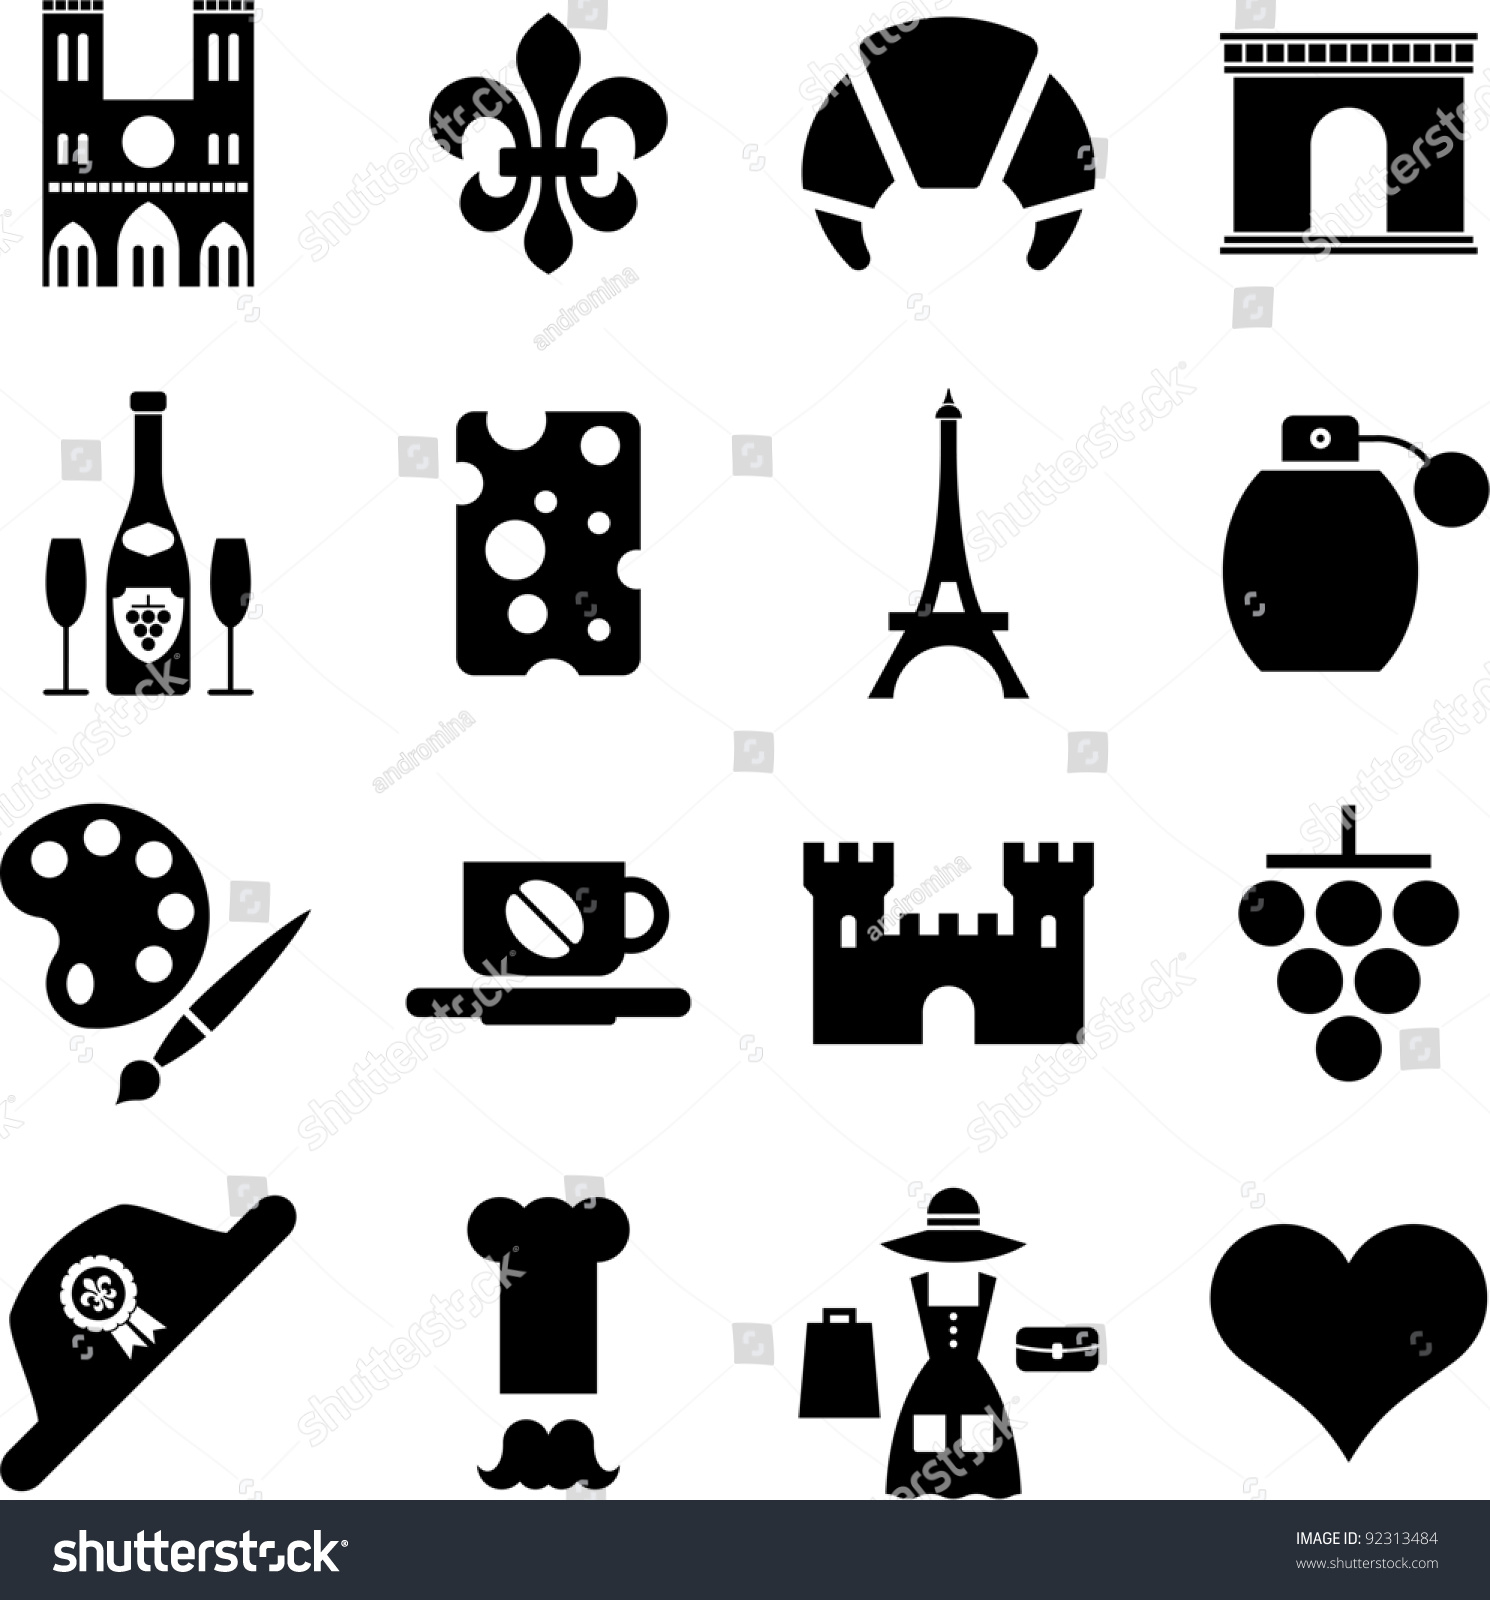 SVG of France pictograms svg